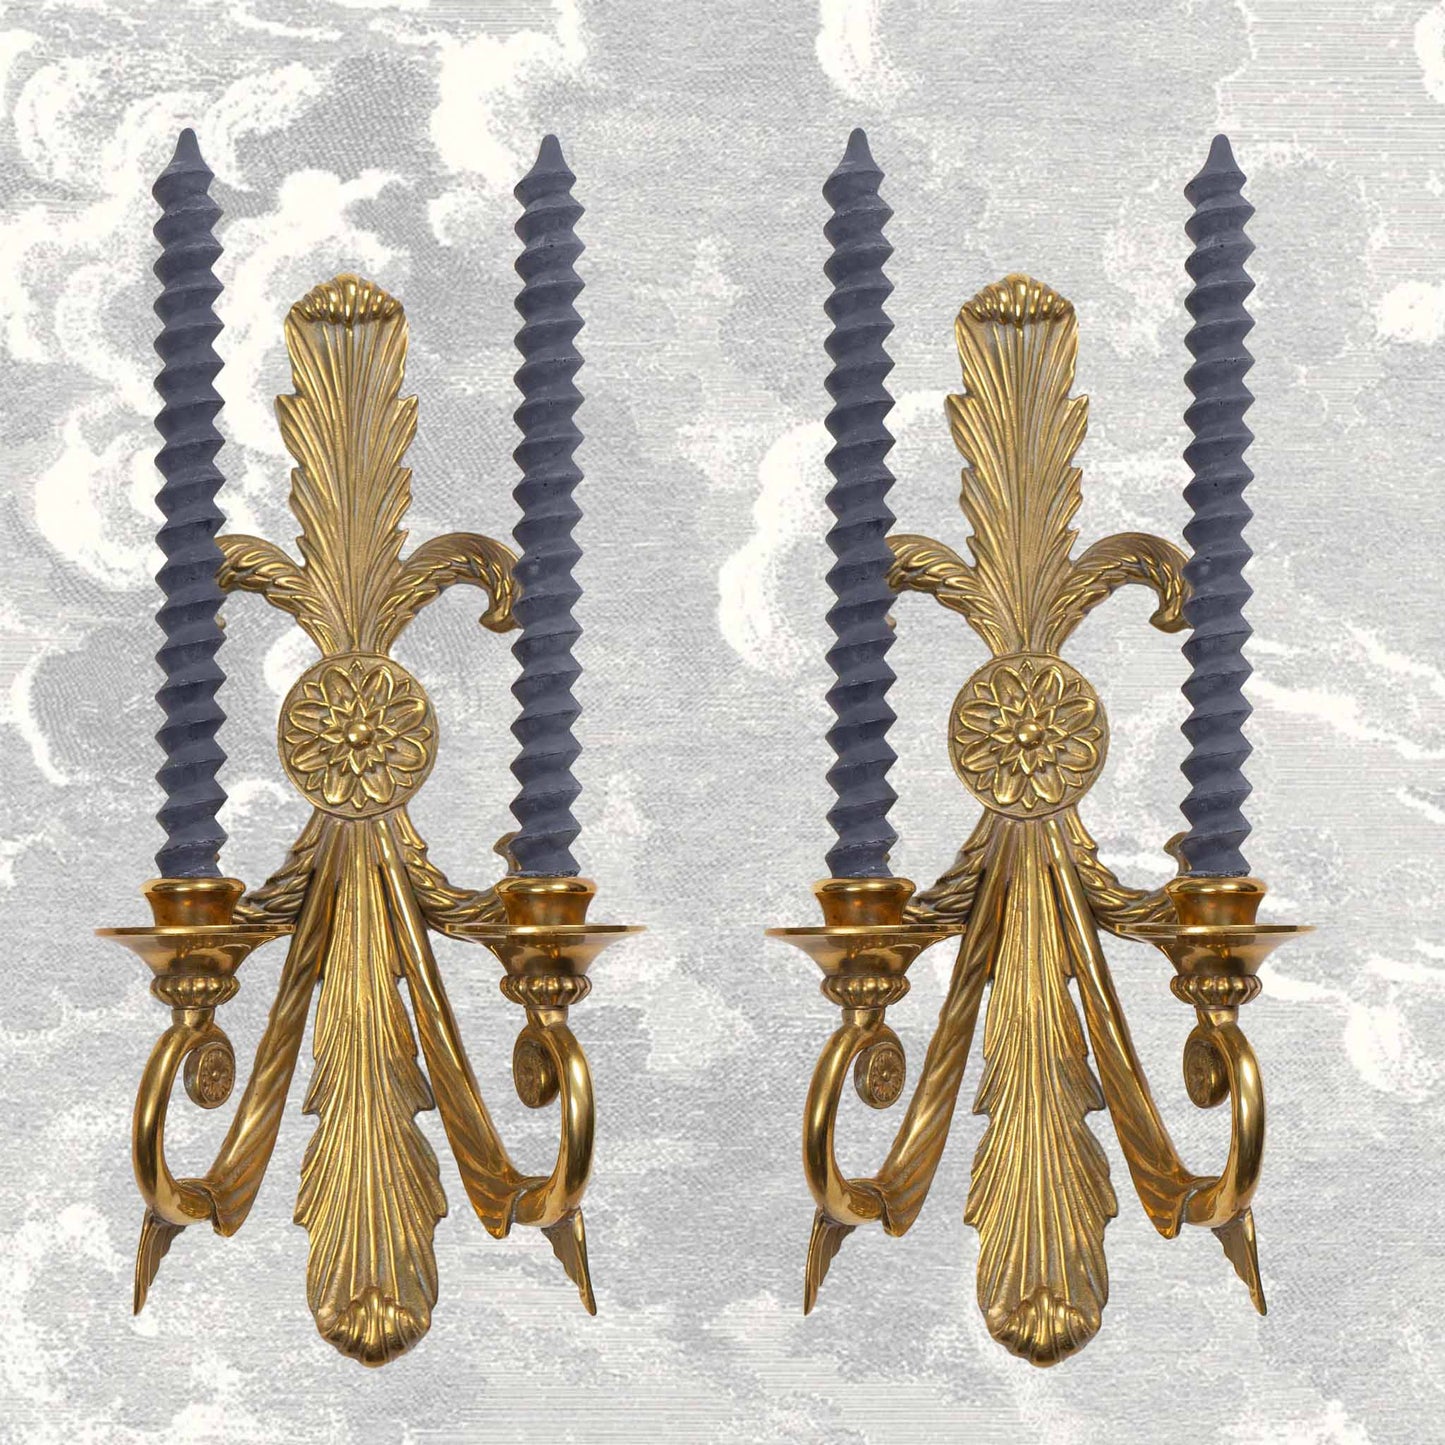 Vintage Brass French Art Nouveau-Style Candle Sconces - Decorative crafts inc